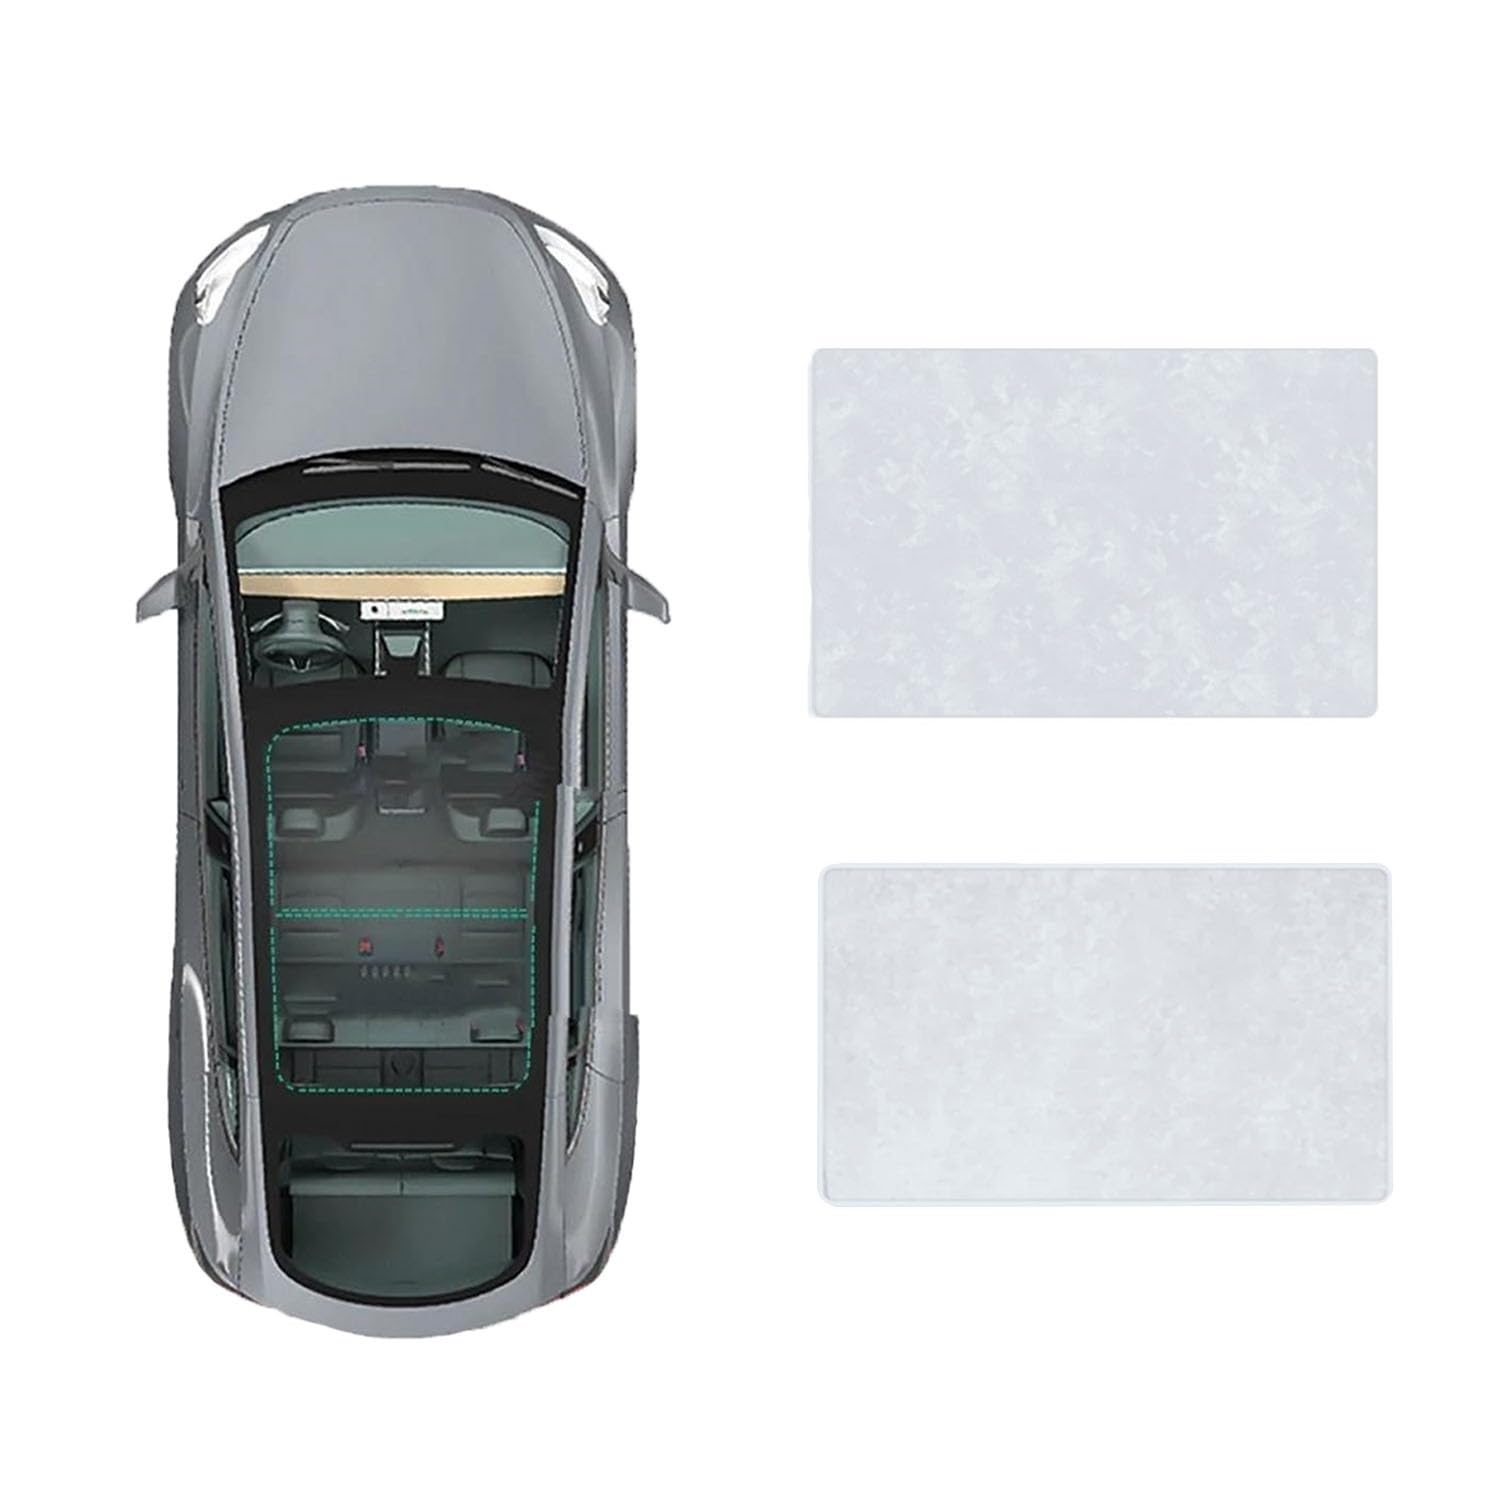 Für VW Touran 2011- Auto-Schiebedach-Beschattung,Dach Wärme Isolierung Anti-UV Visier Auto Zubehör,B-Gray white Suede von ANRAM